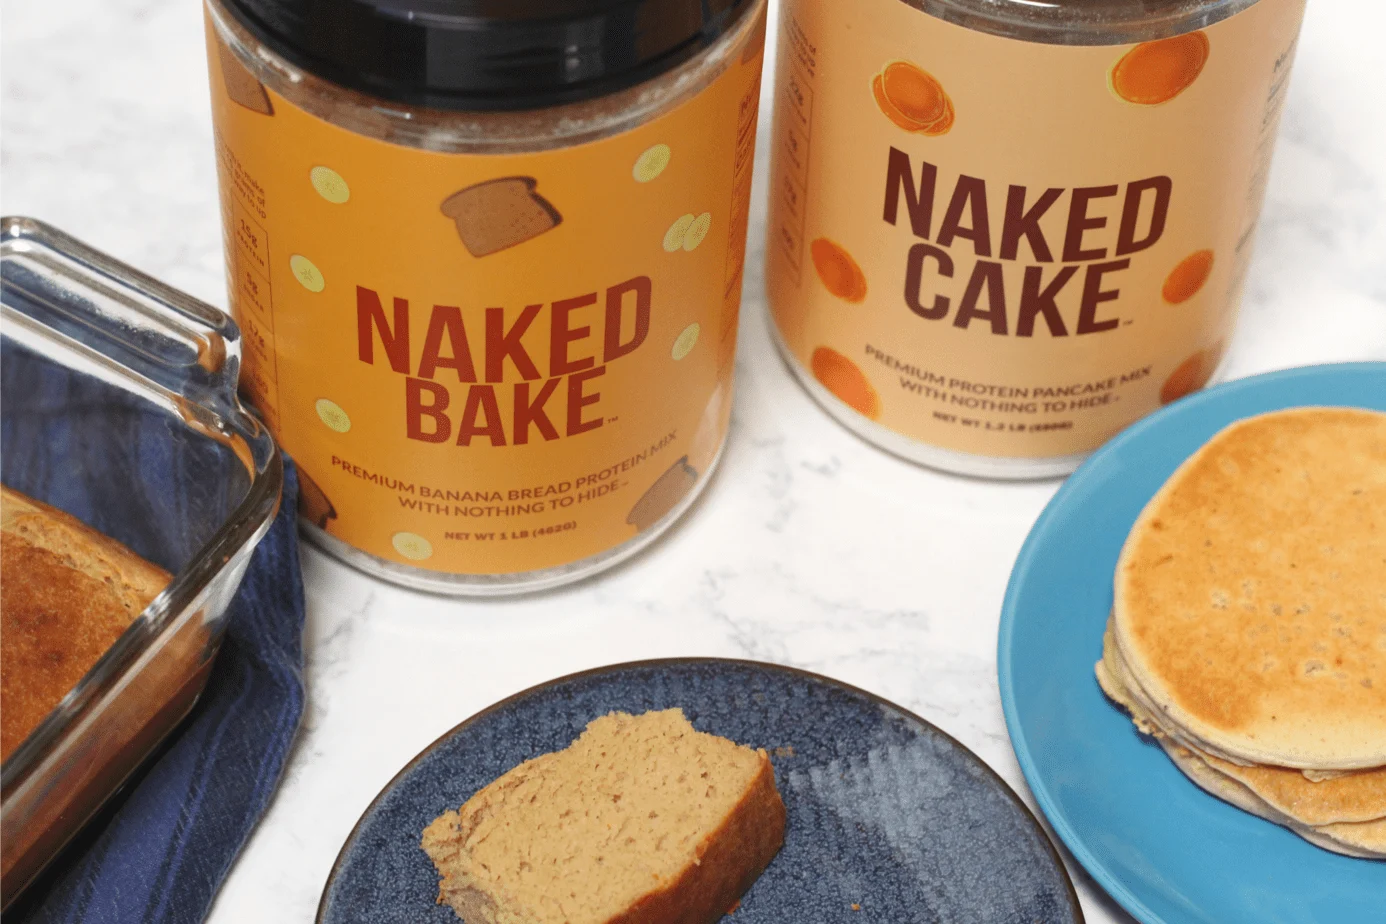 naked bake naked cake